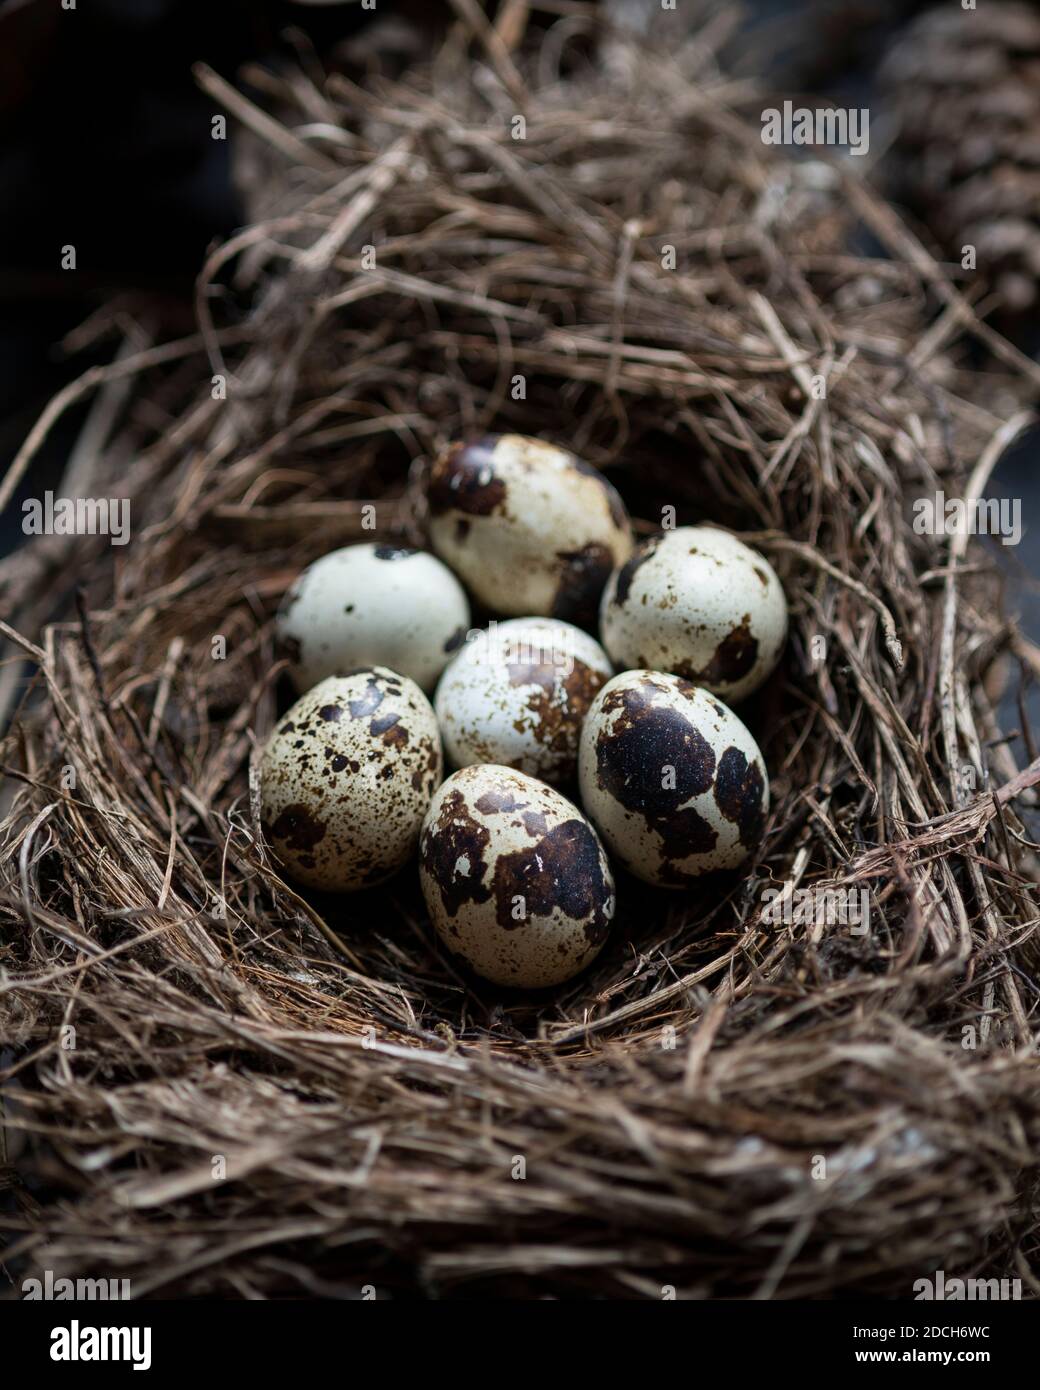 Eier von einer Wachtel in einer schale,rohe wachtel eier,colour food photograph of quail eggs in a bowl,Quails Egg,schale mit Wachtel eiern,ingredient Stock Photo